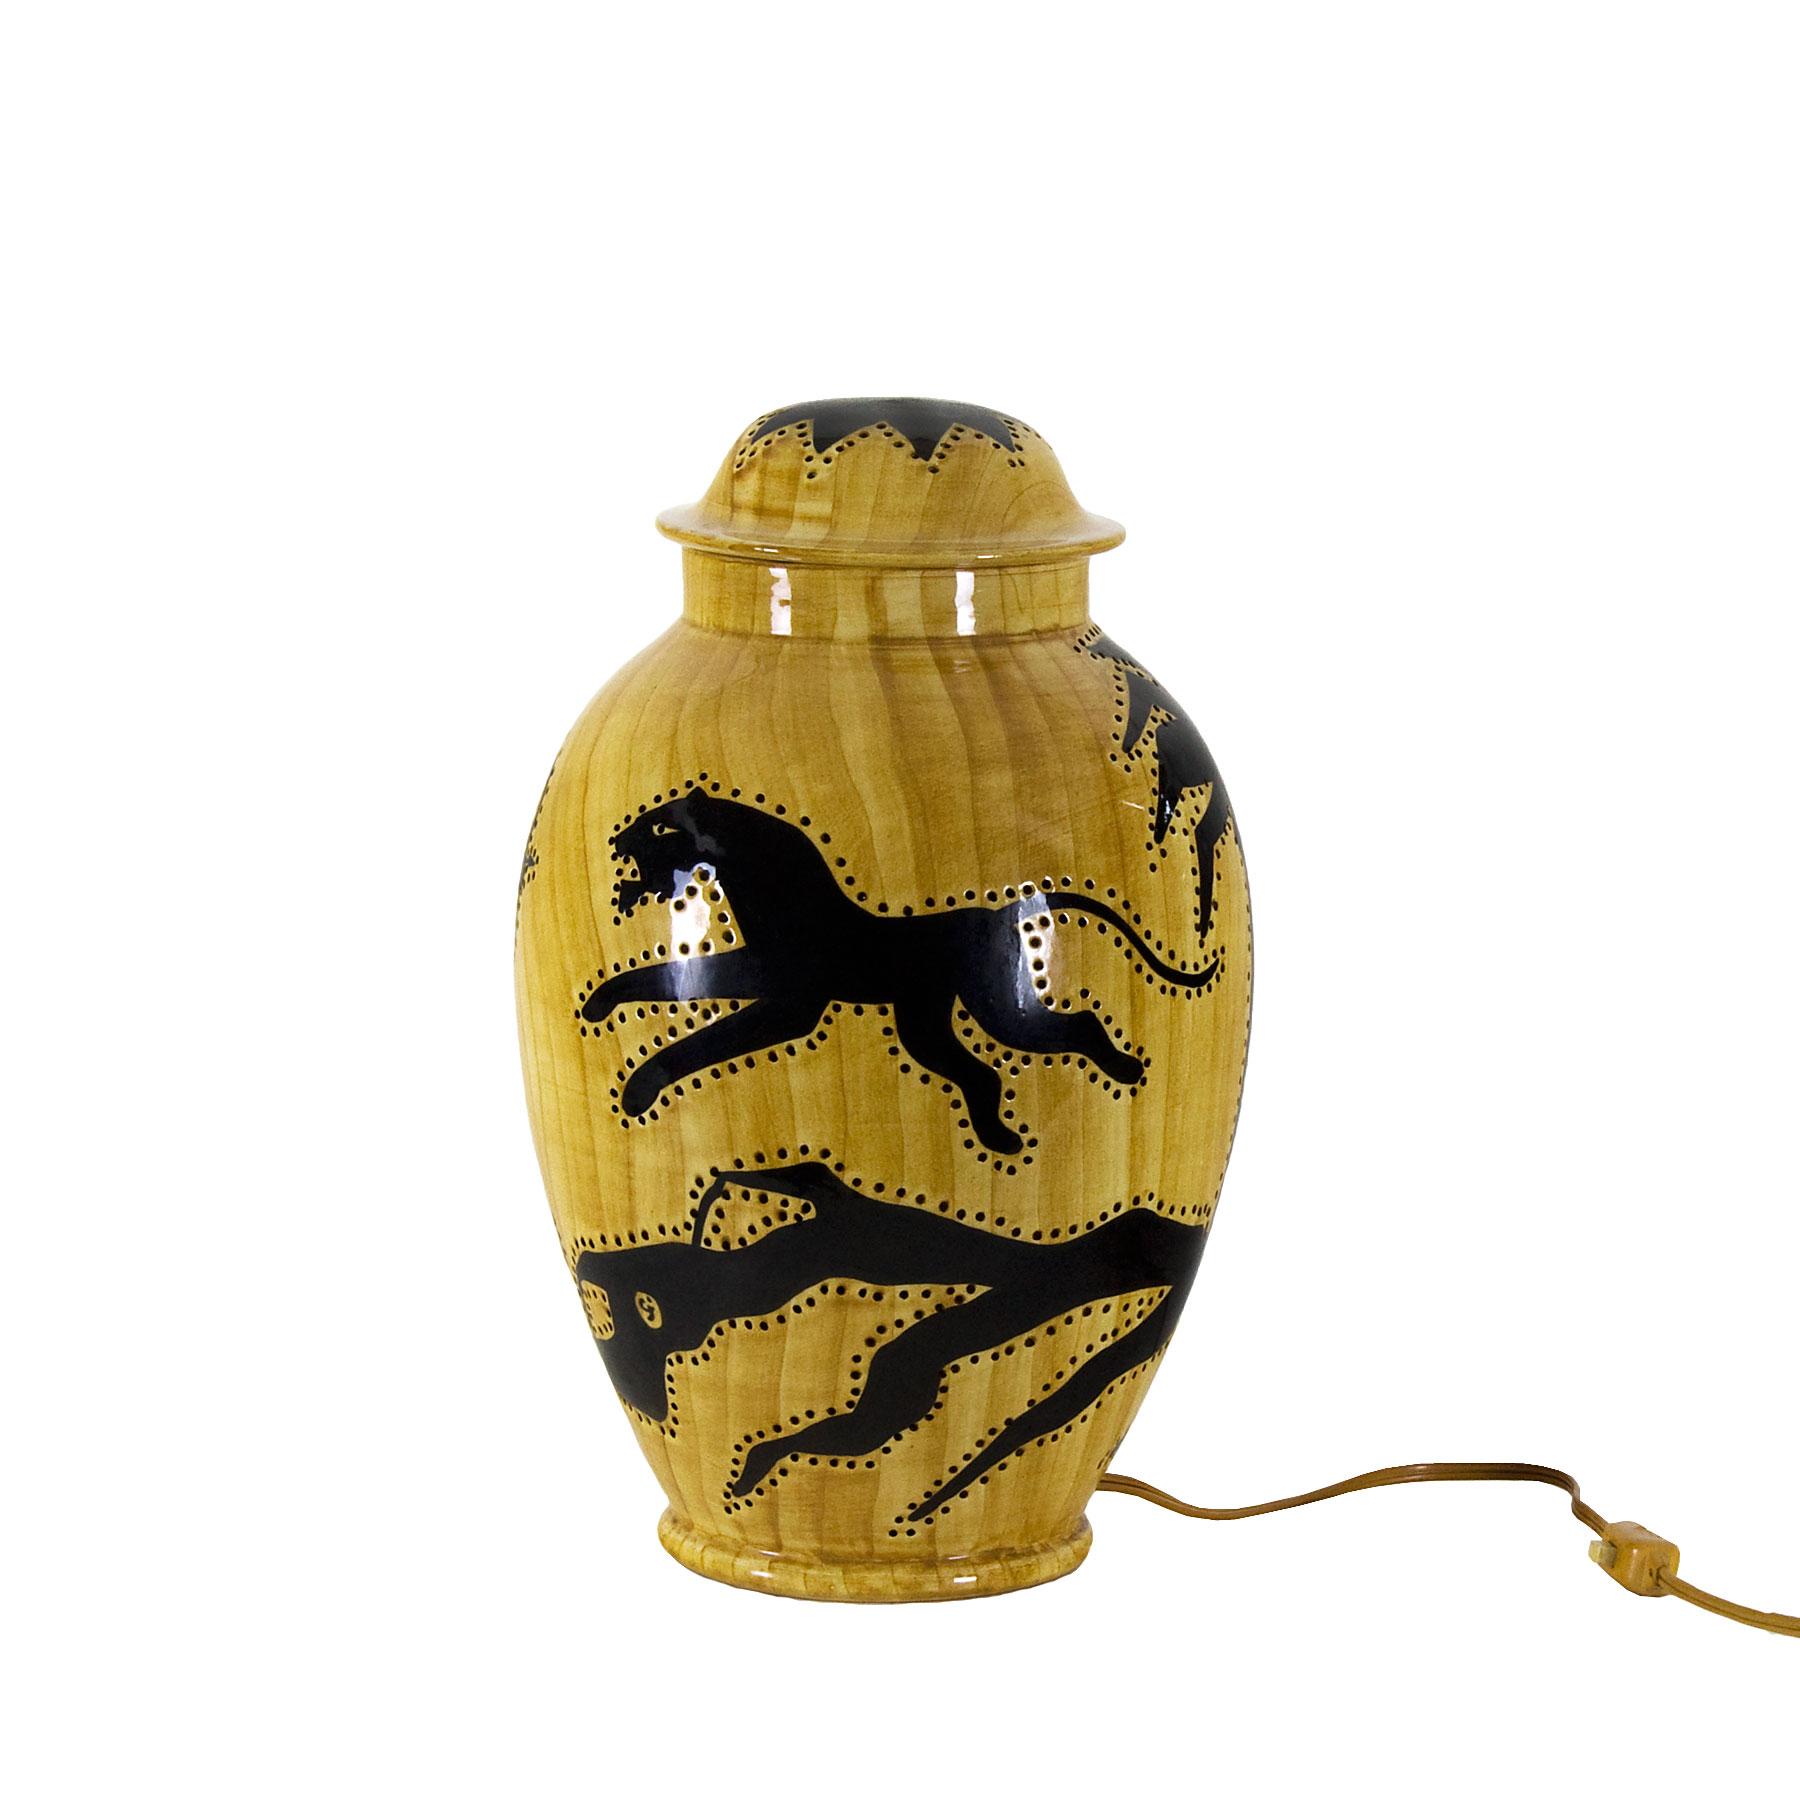 French 1950s Covered Pot Lamp by Grandjean-Jourdan, Perforated Ceramic, Vallauris